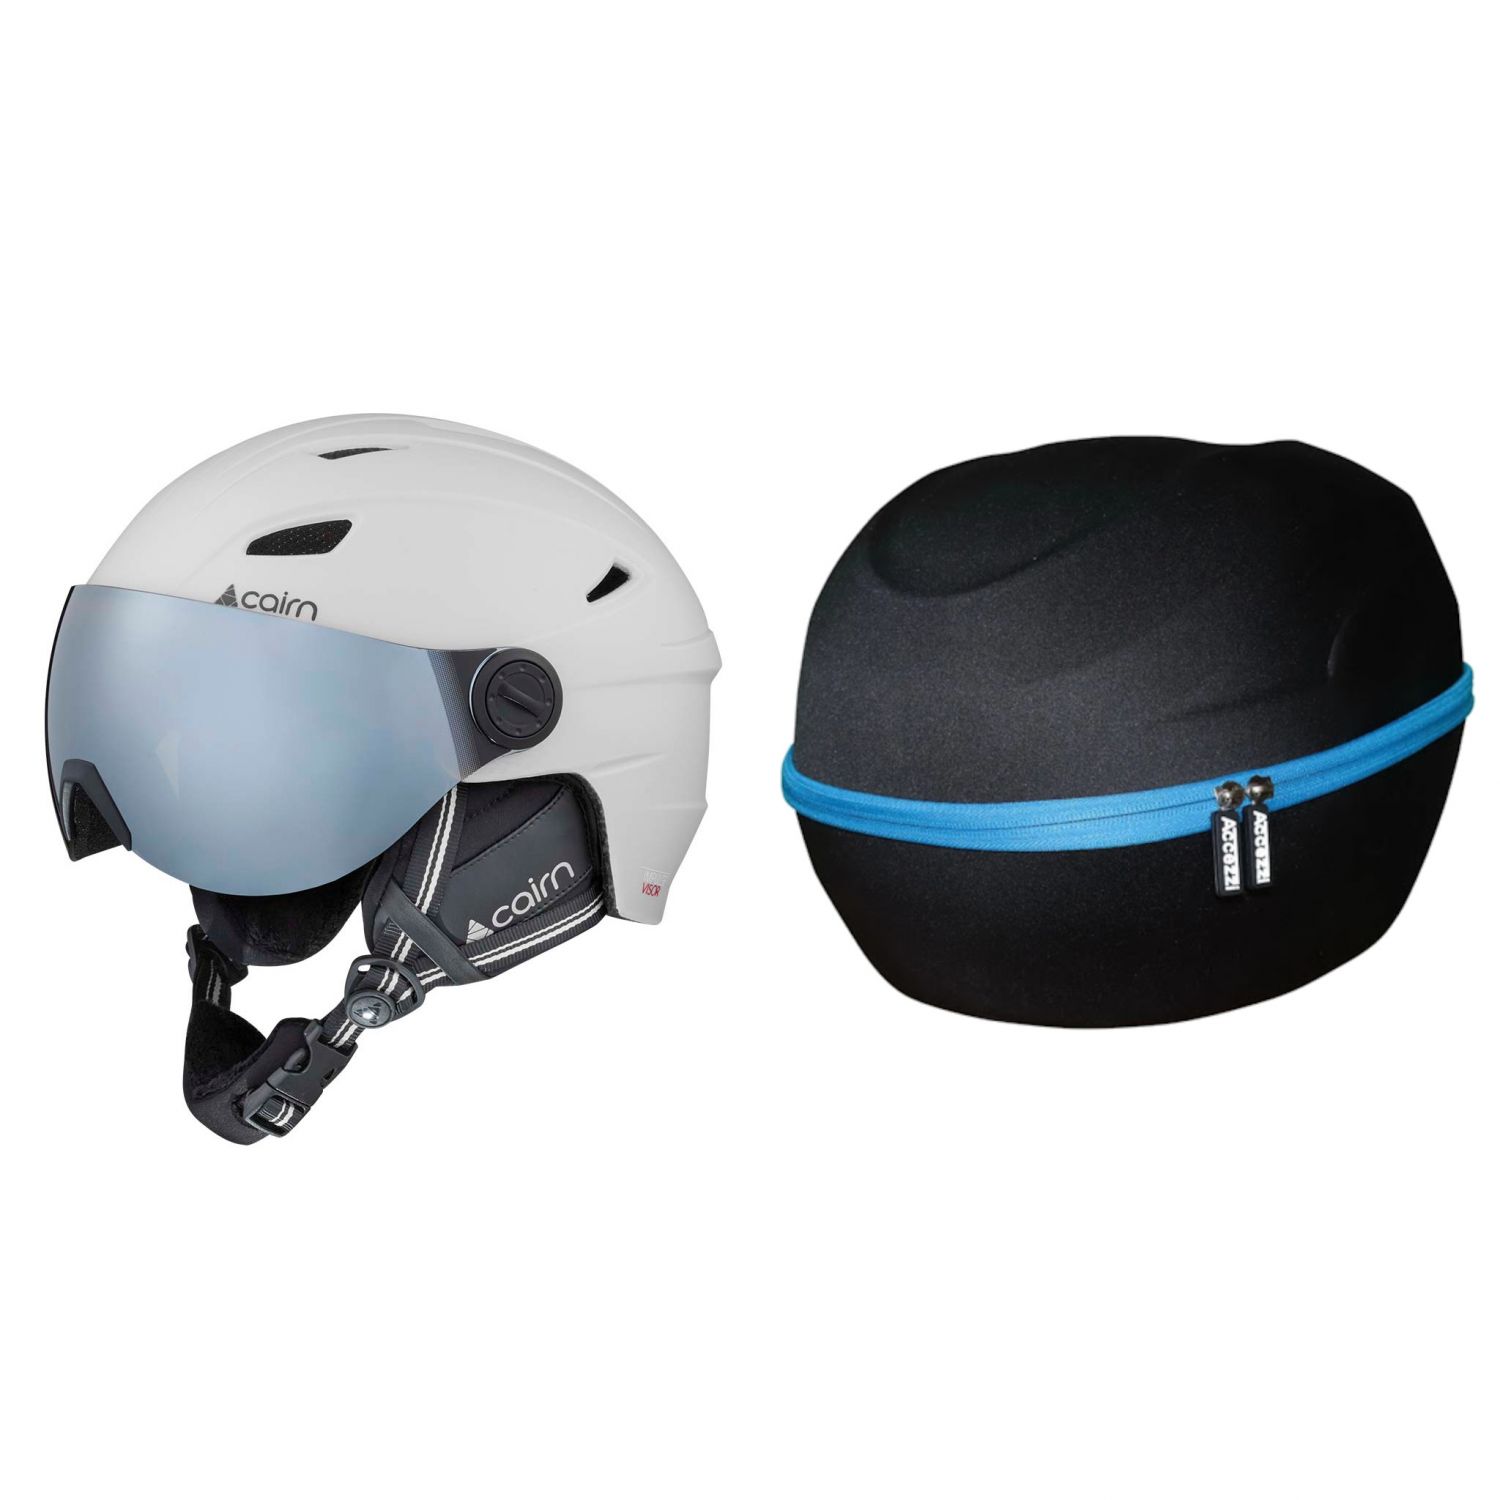 Cairn Impulse skihjelm med visir, hvid + Accezzi Cortina, hjelmcase